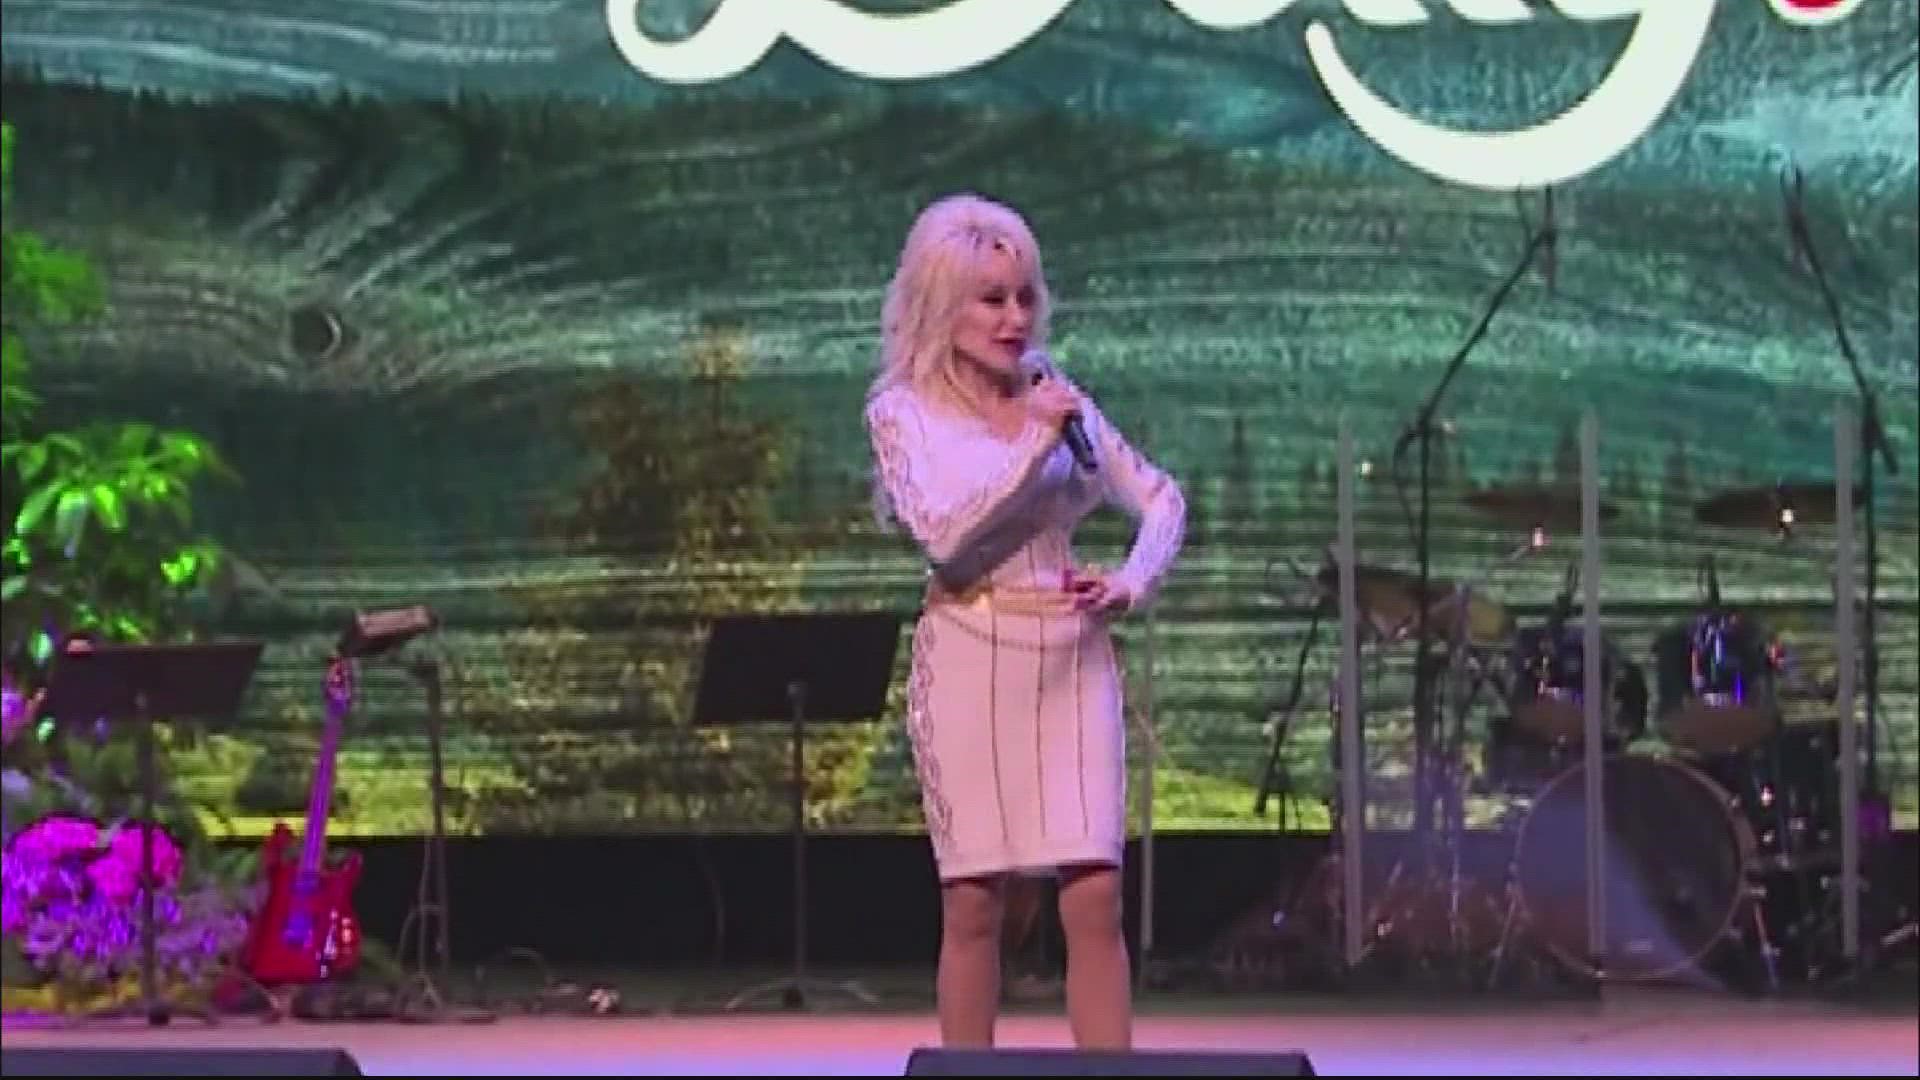 Dolly Parton receives $100 million award from Jeff Bezos